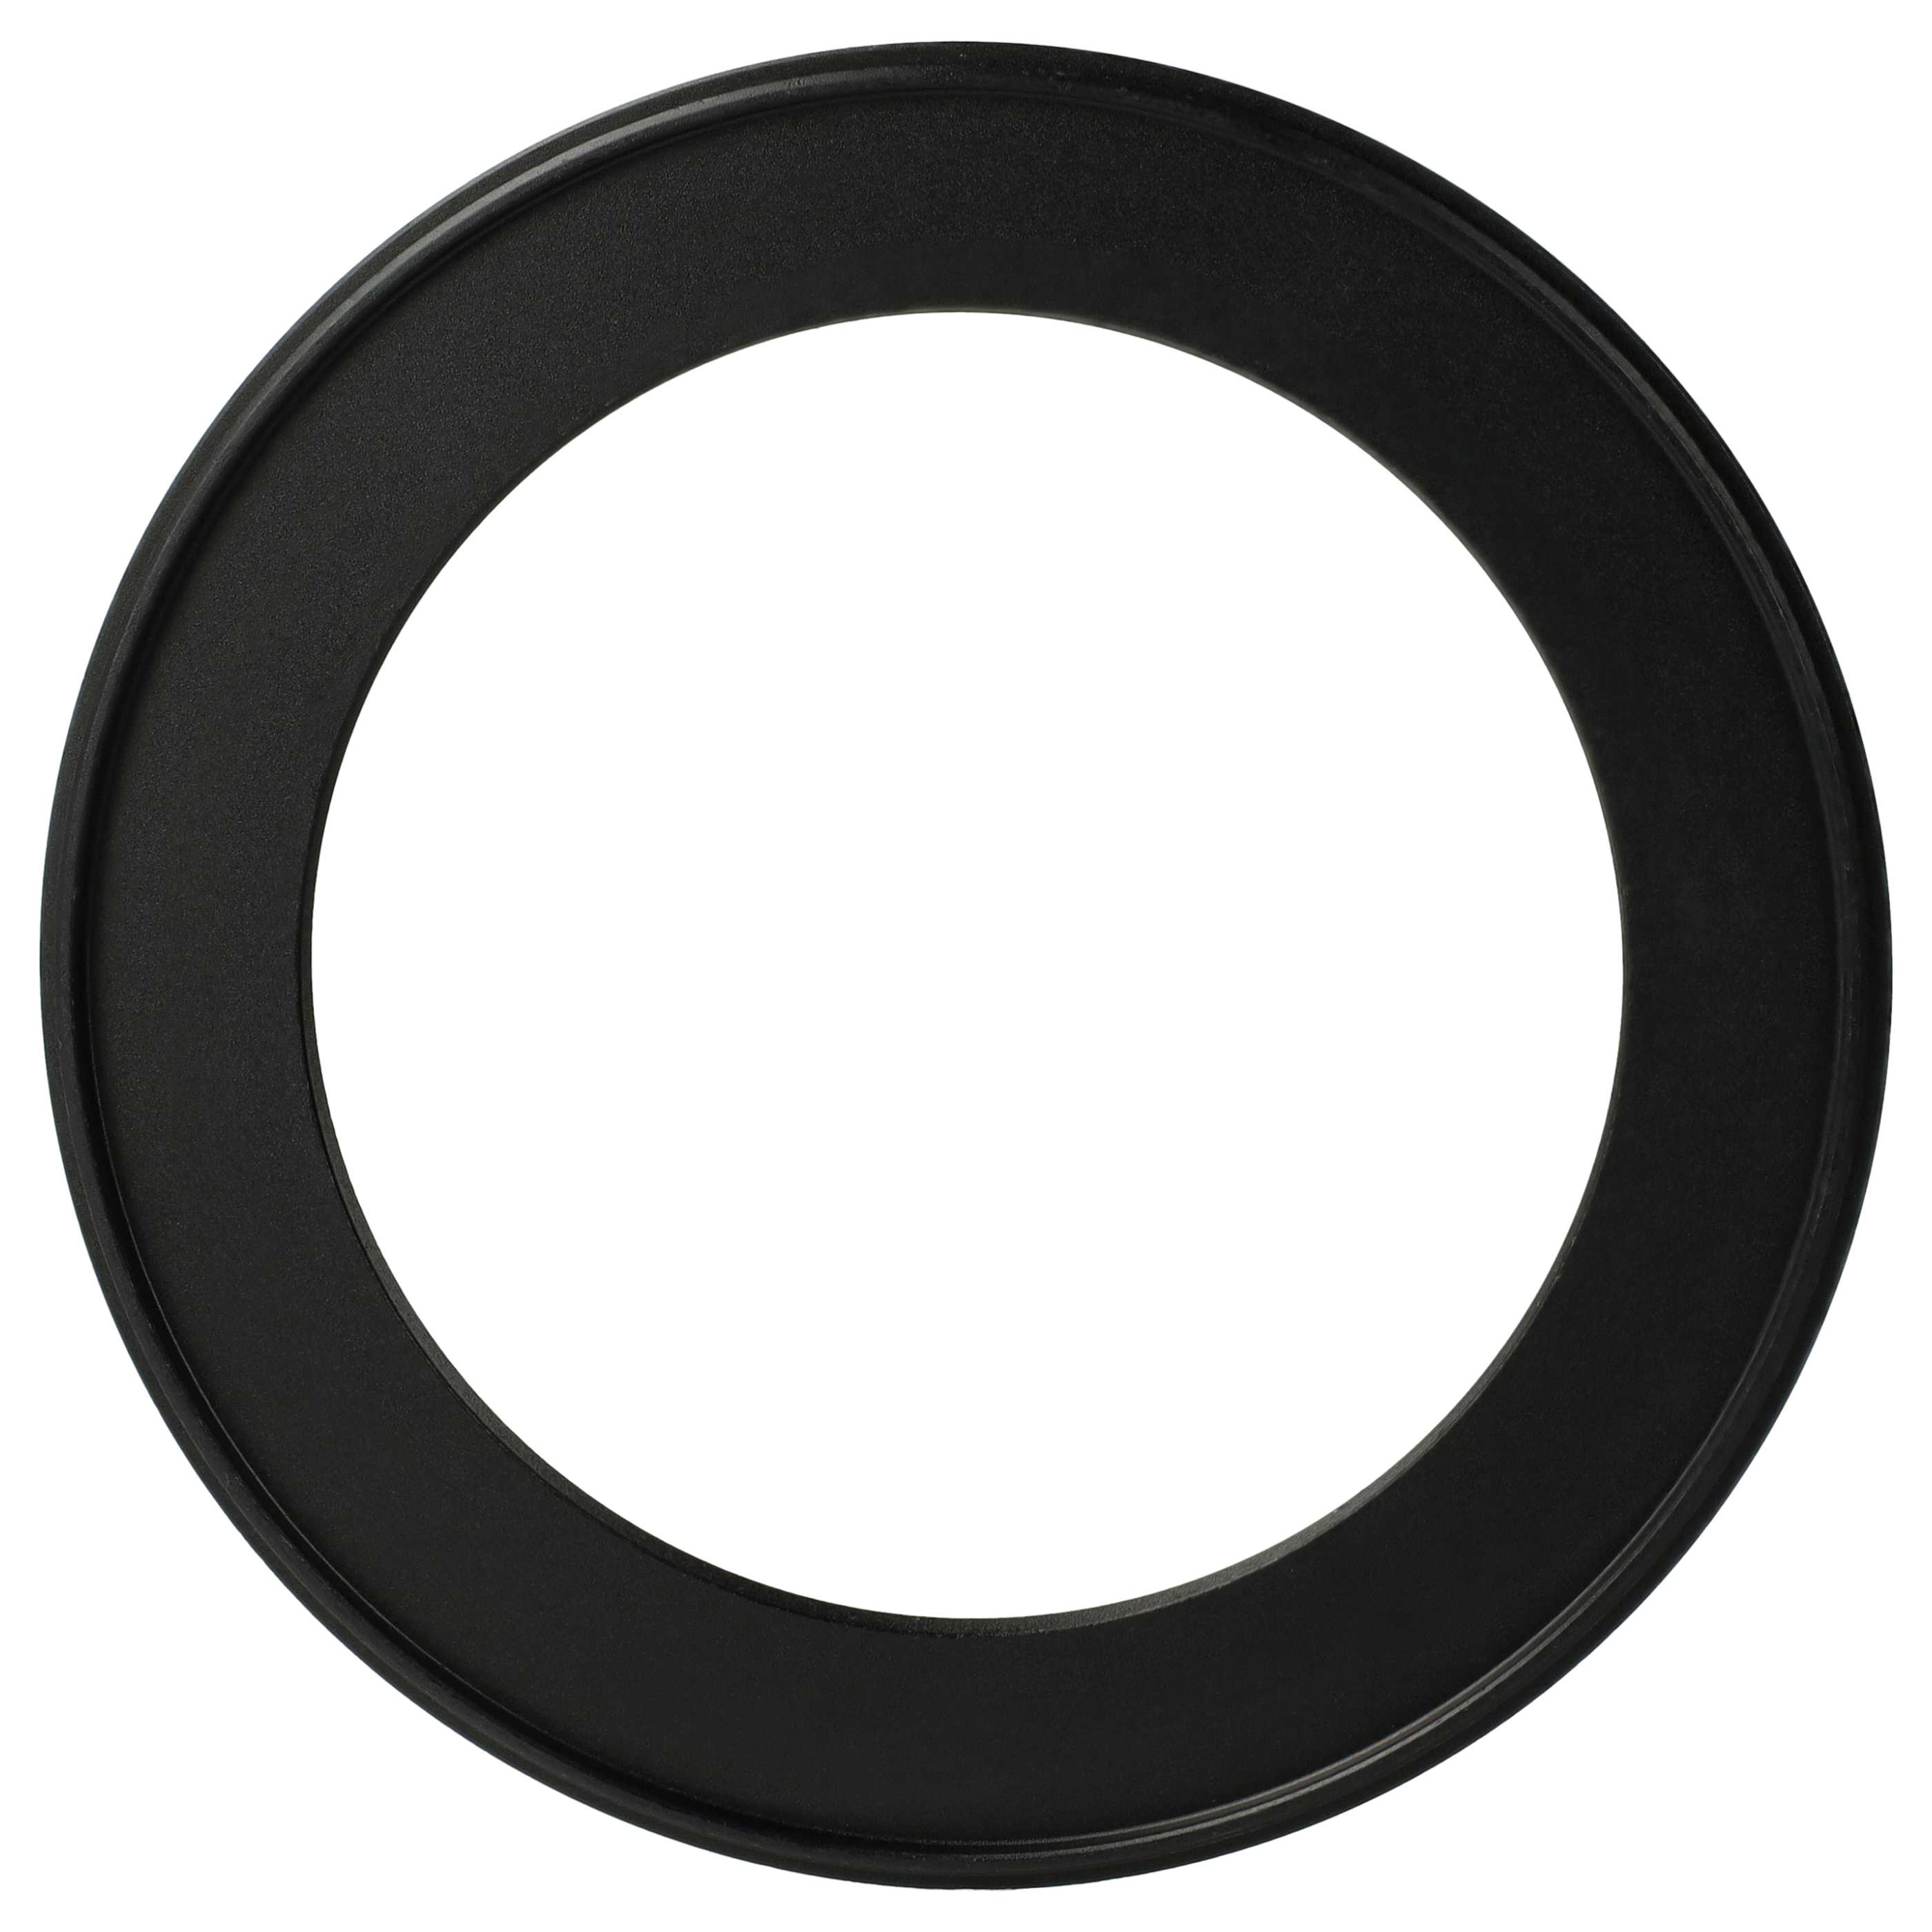 Anillo adaptador Step Down de 105 mm a 77 mm para objetivo de la cámara - Adaptador de filtro, metal, negro